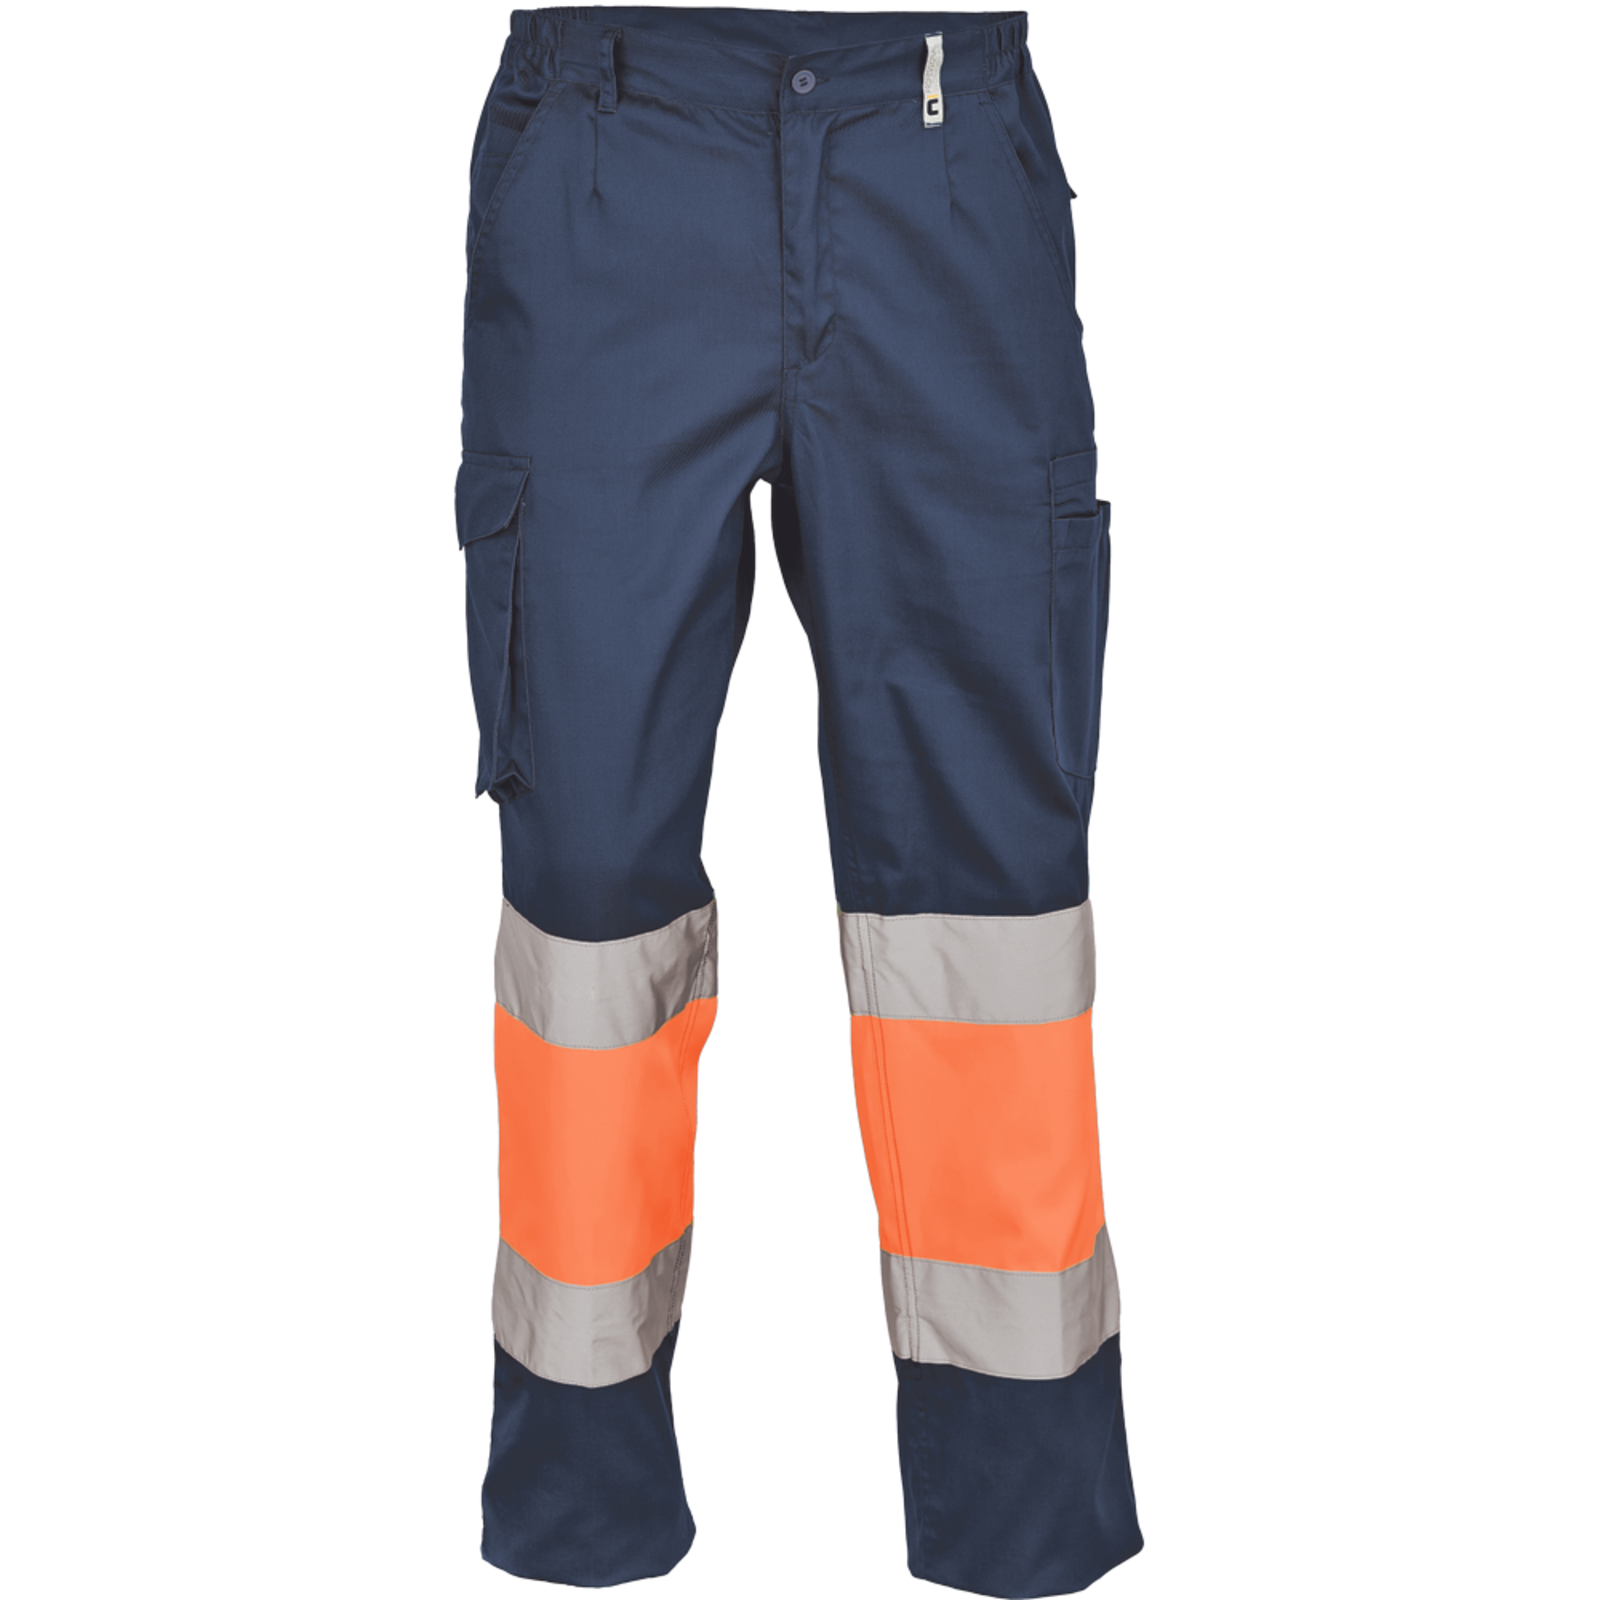 Pracovné reflexné nohavice Cerva Ciudades Bilbao HV - veľkosť: 64, farba: nám. modrá/oranžová